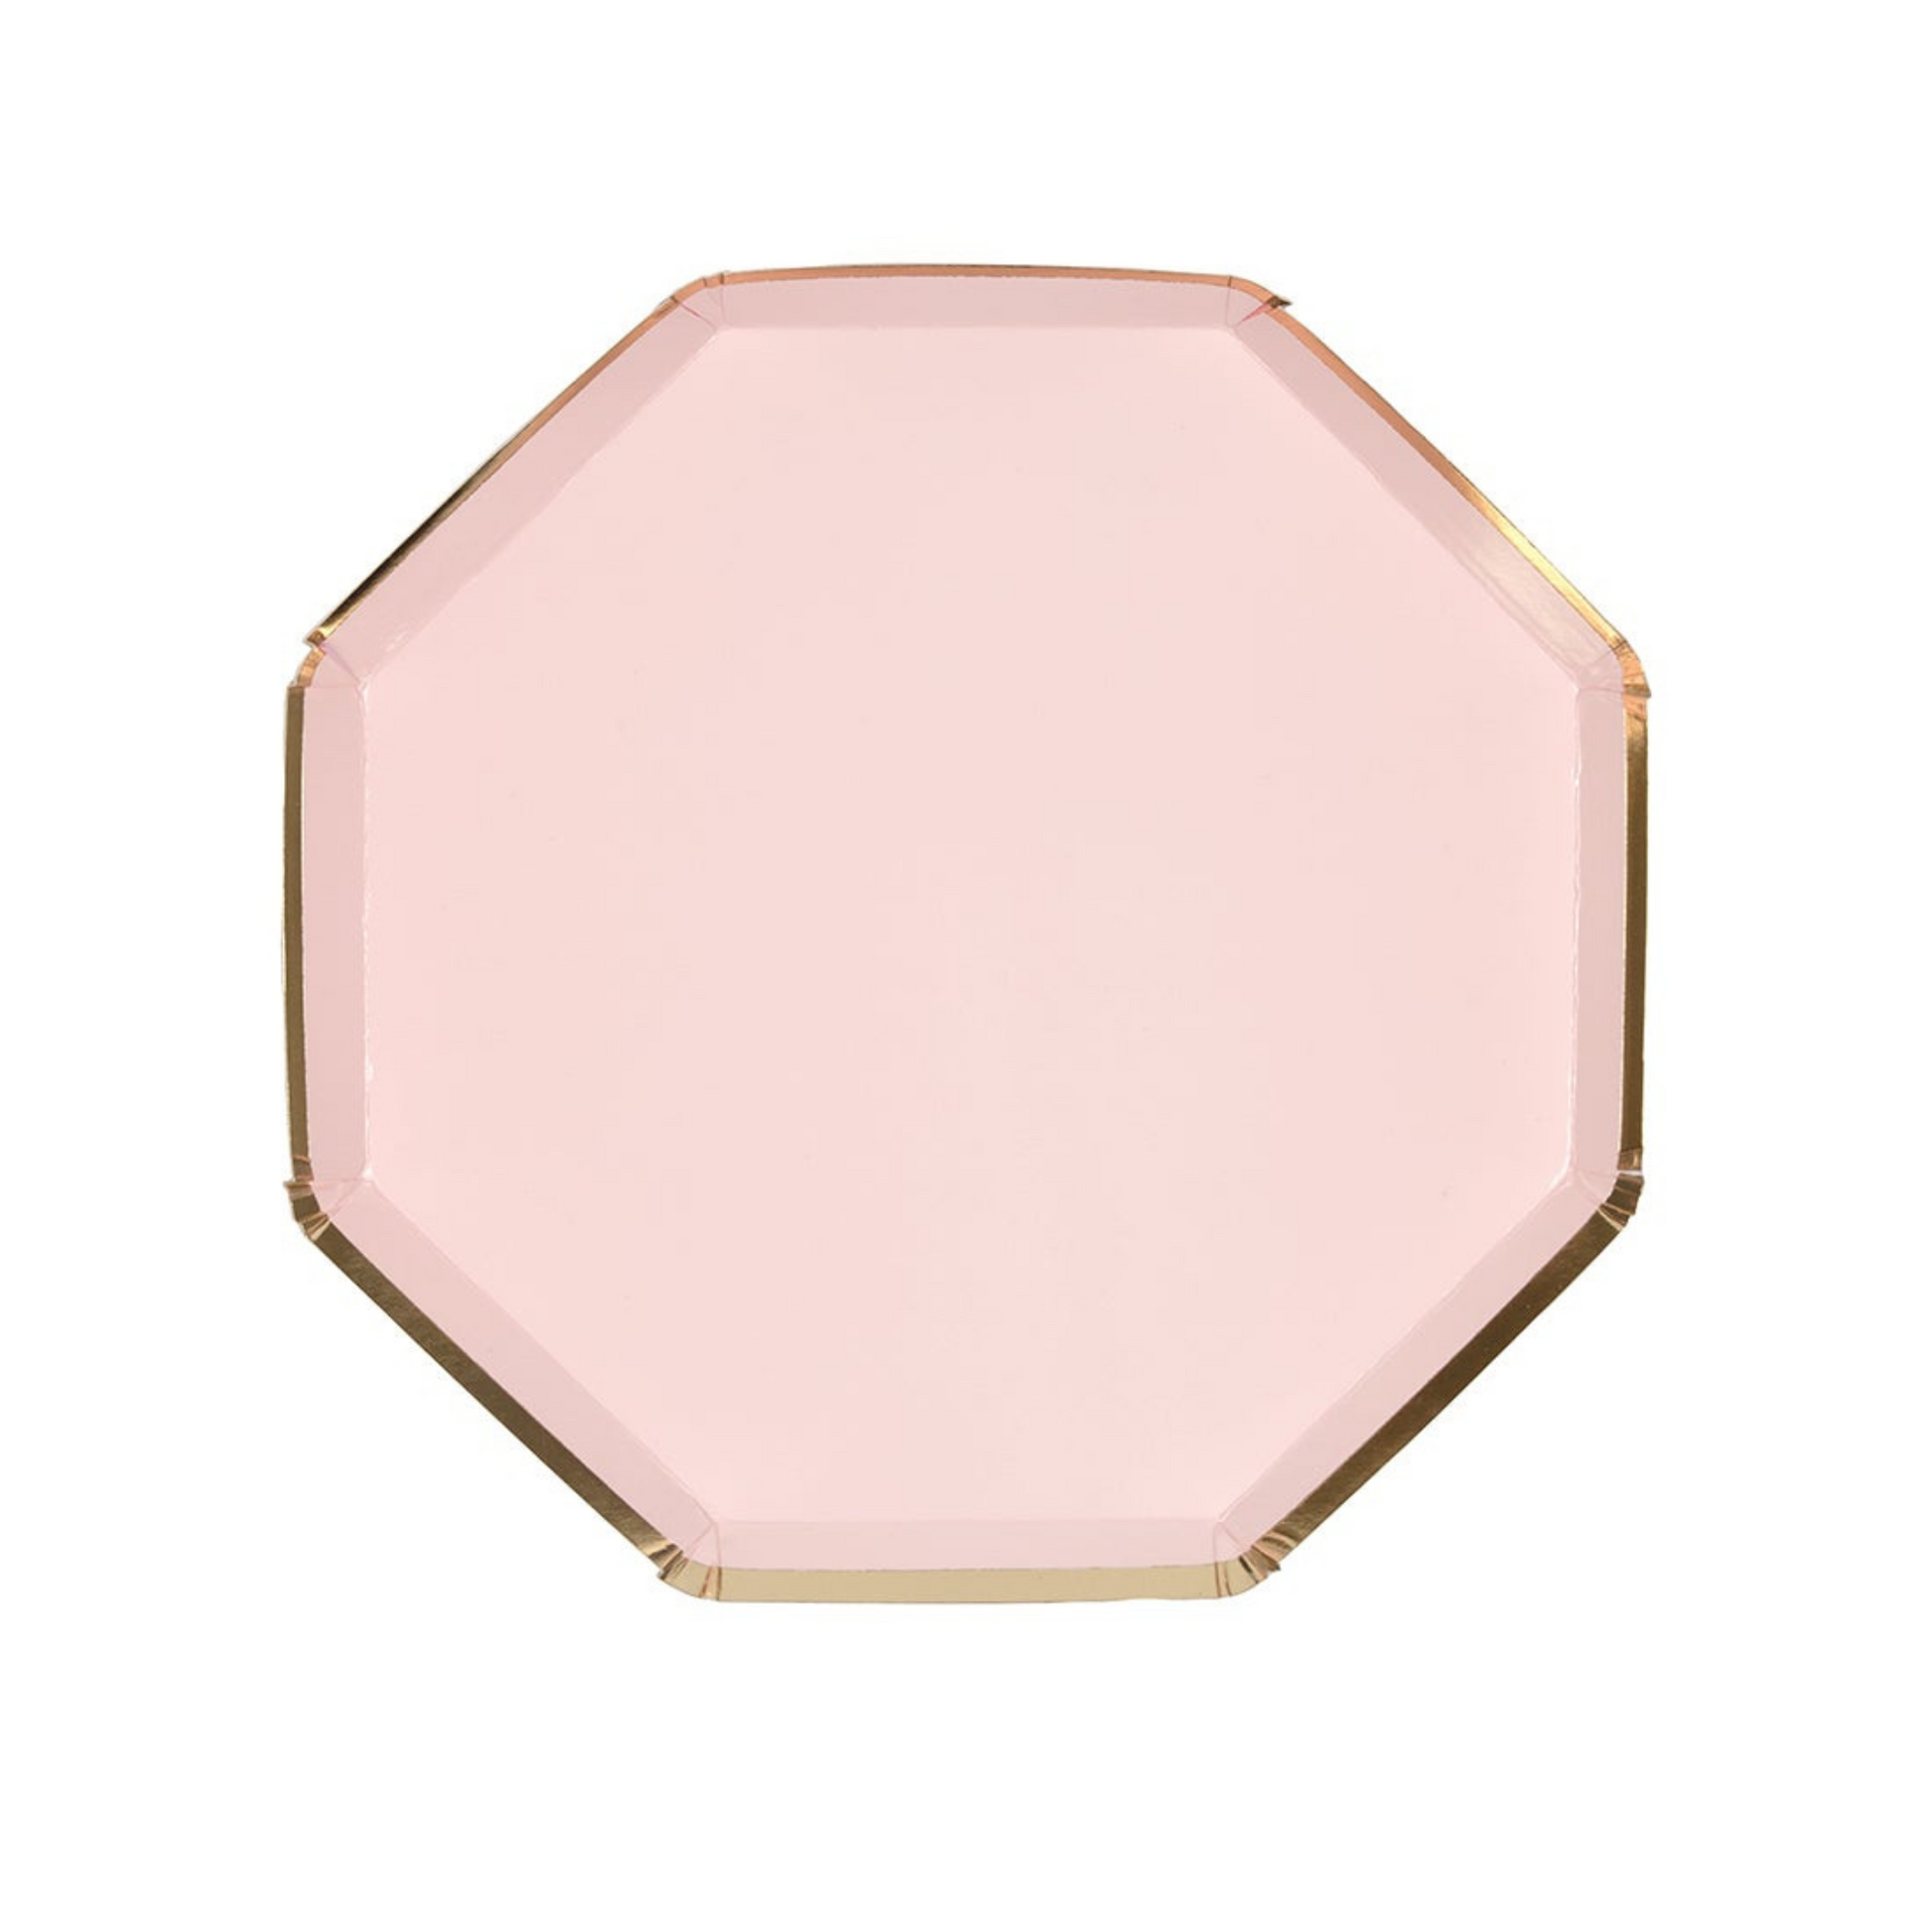 dusty pink side plates by meri meri